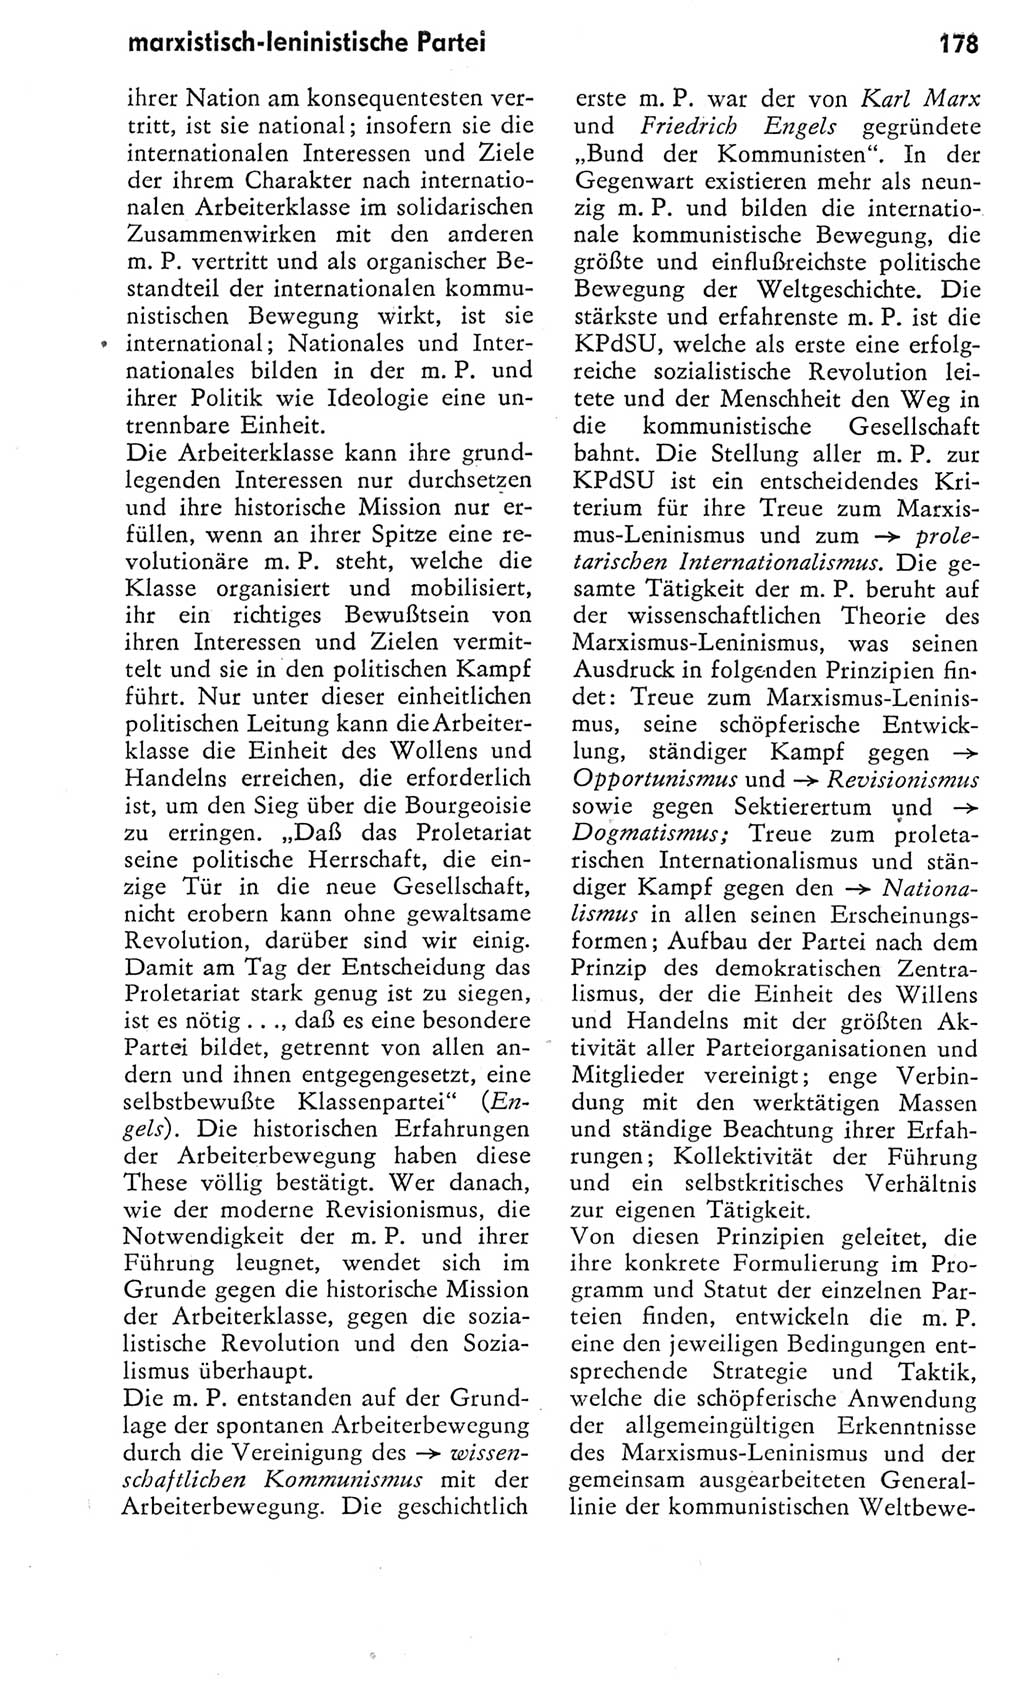 Kleines Wörterbuch der marxistisch-leninistischen Philosophie [Deutsche Demokratische Republik (DDR)] 1975, Seite 178 (Kl. Wb. ML Phil. DDR 1975, S. 178)